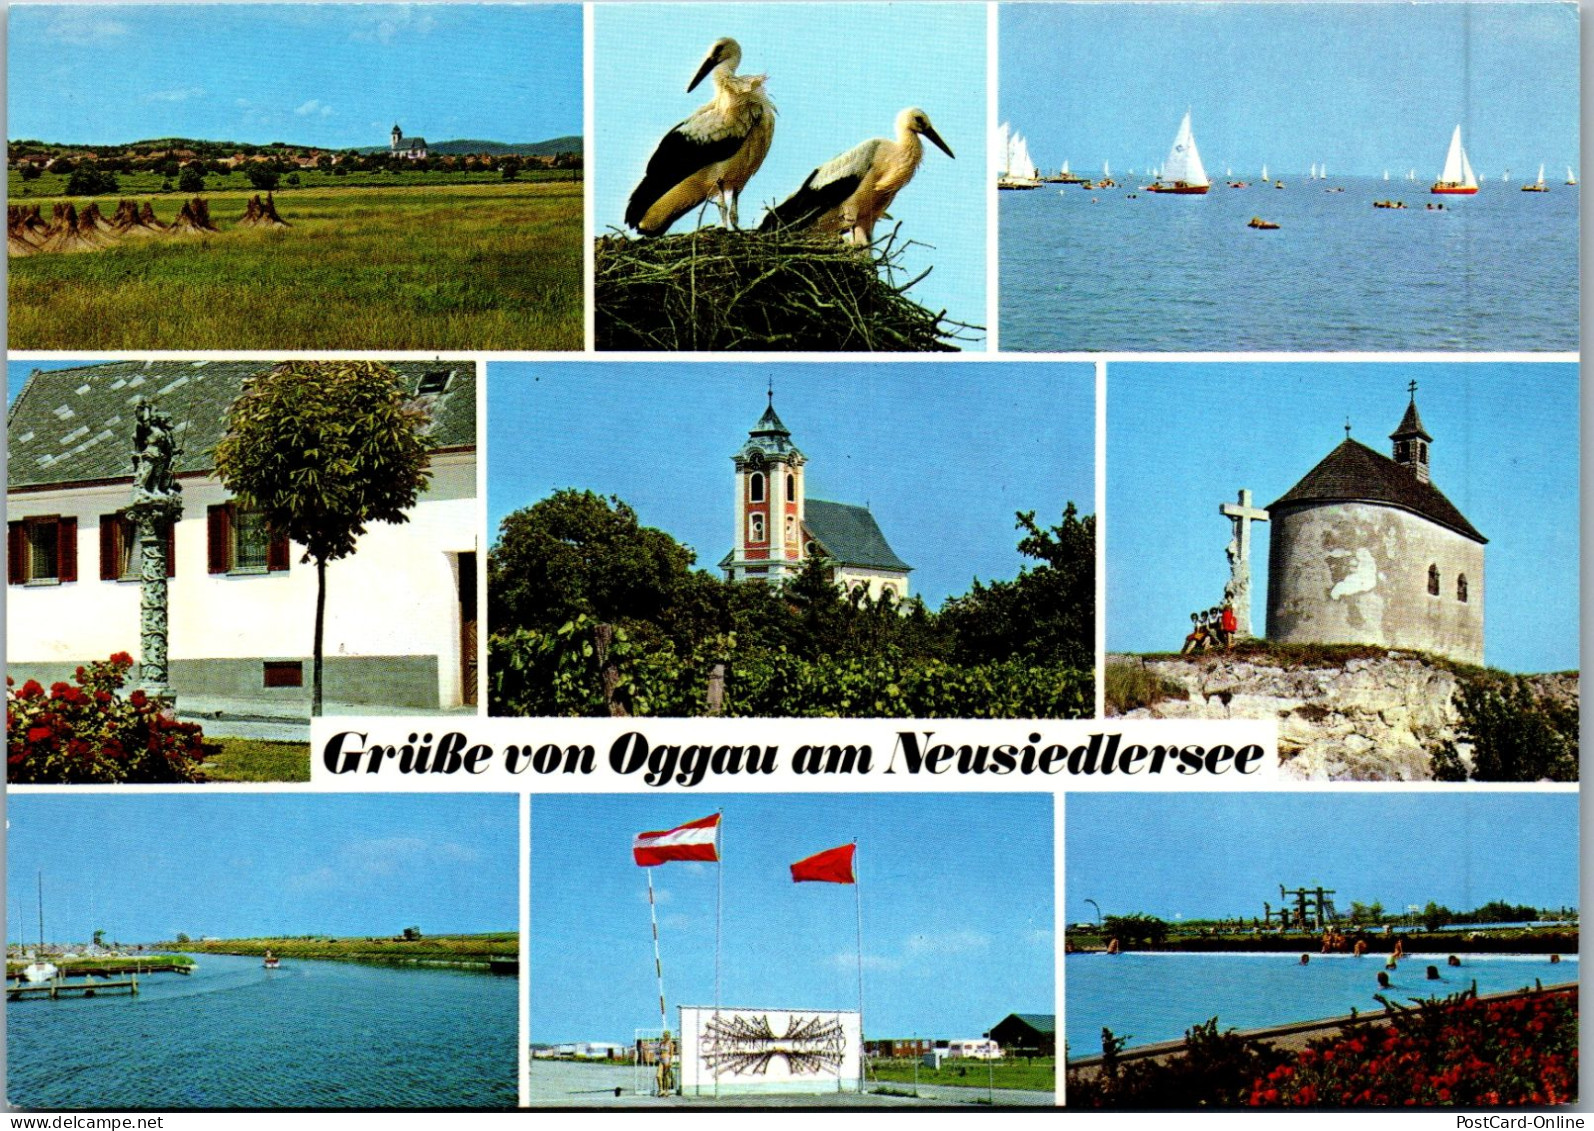 49716 - Burgenland - Oggau , Neusiedlersee , Mehrbildkarte - Gelaufen 1984 - Neusiedlerseeorte